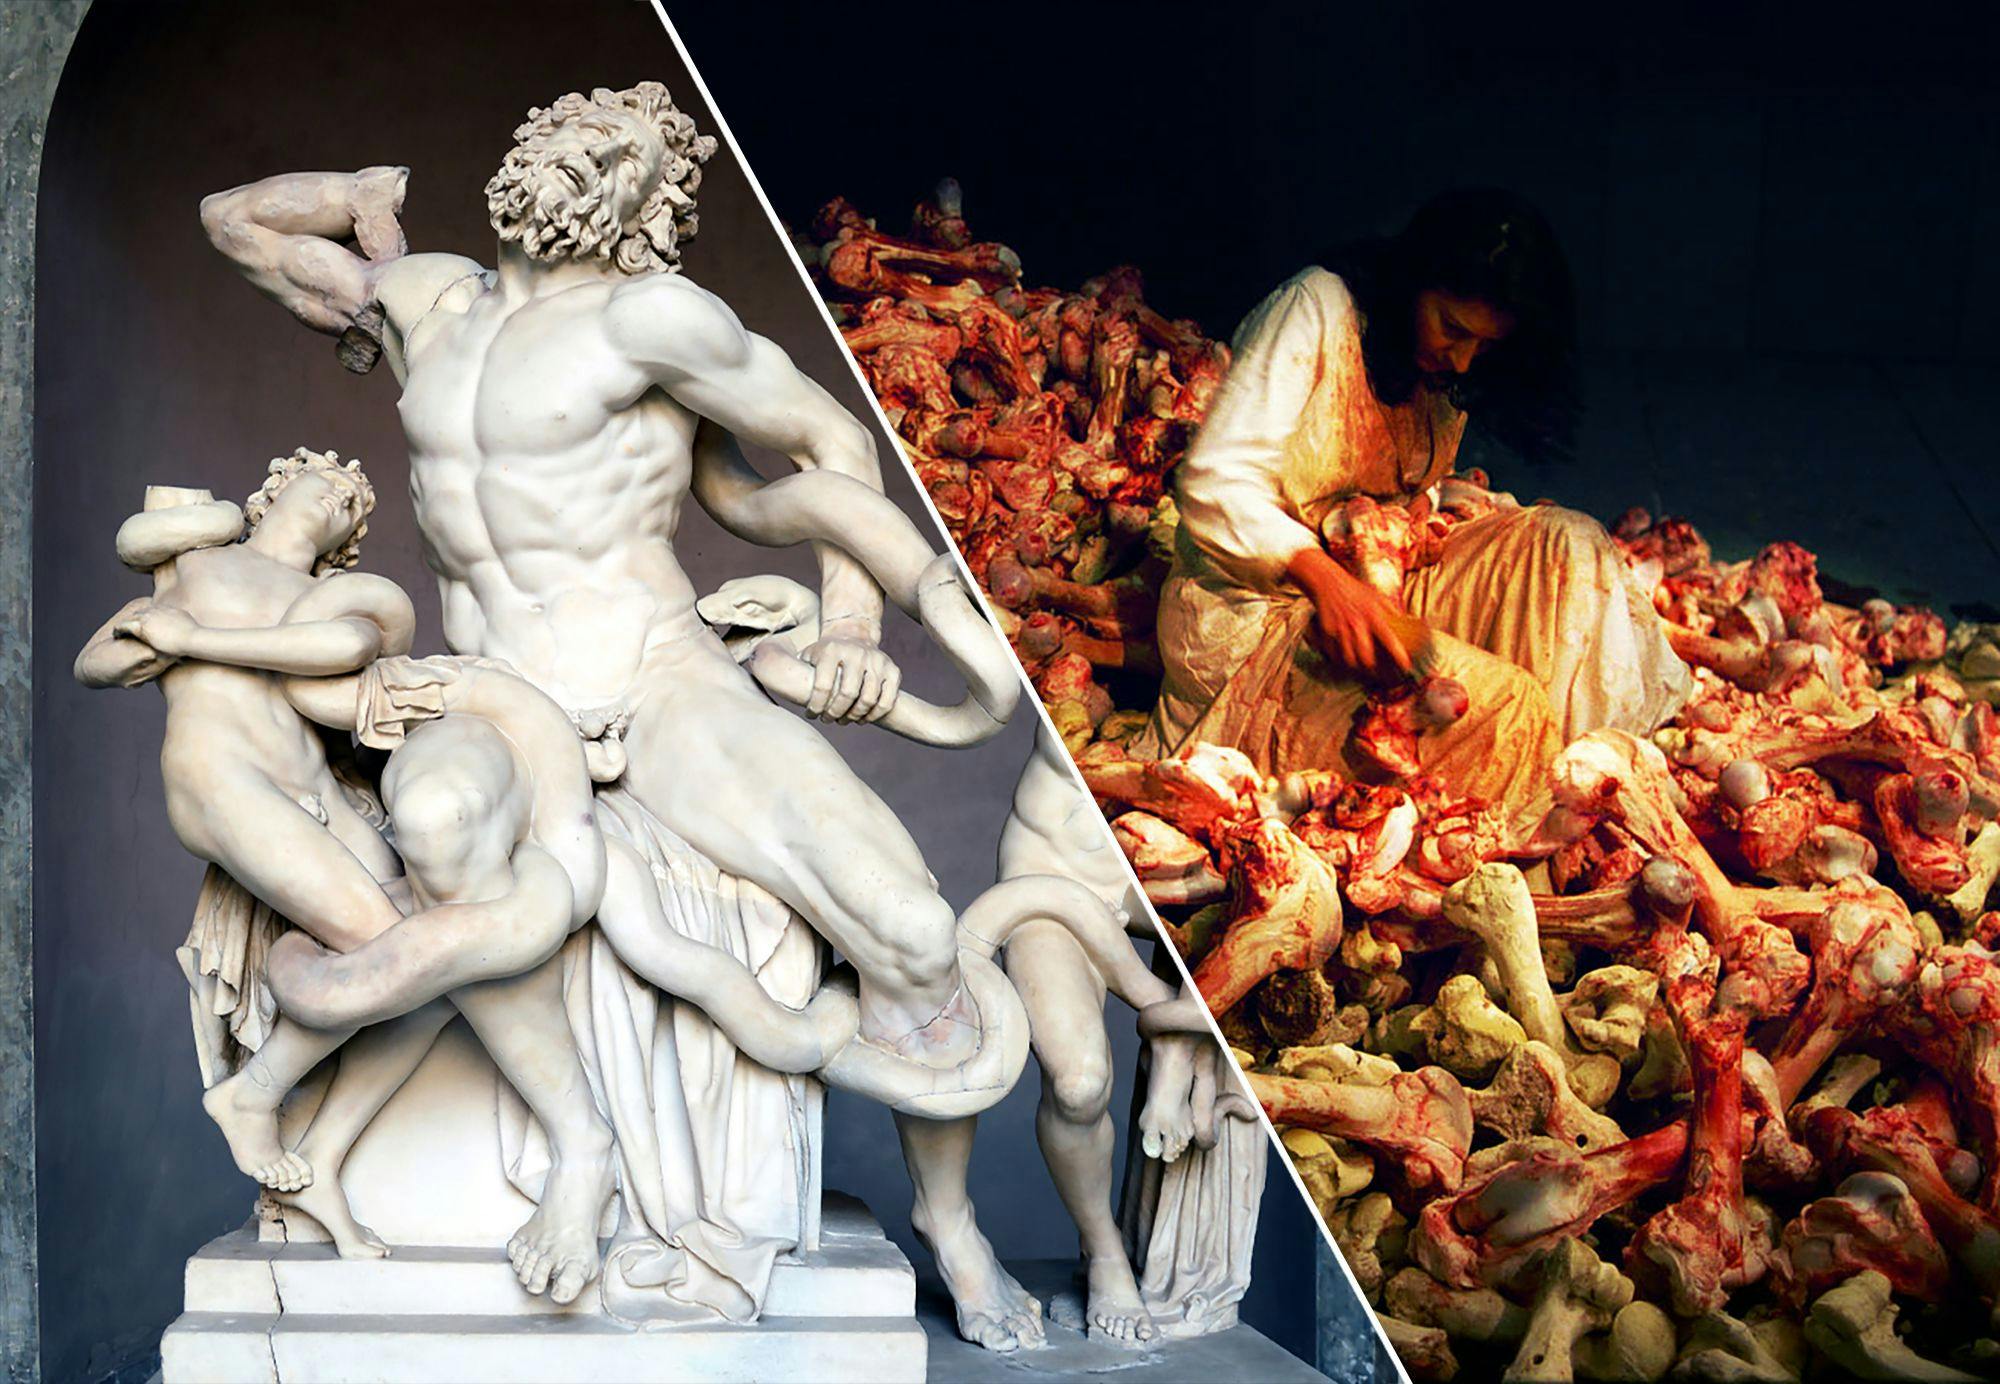 Två olika konstver: marmorskulpturen Laokoongruppen och foto från performanceverket "Balkan Baroque" 1997 av Marina Abramovic